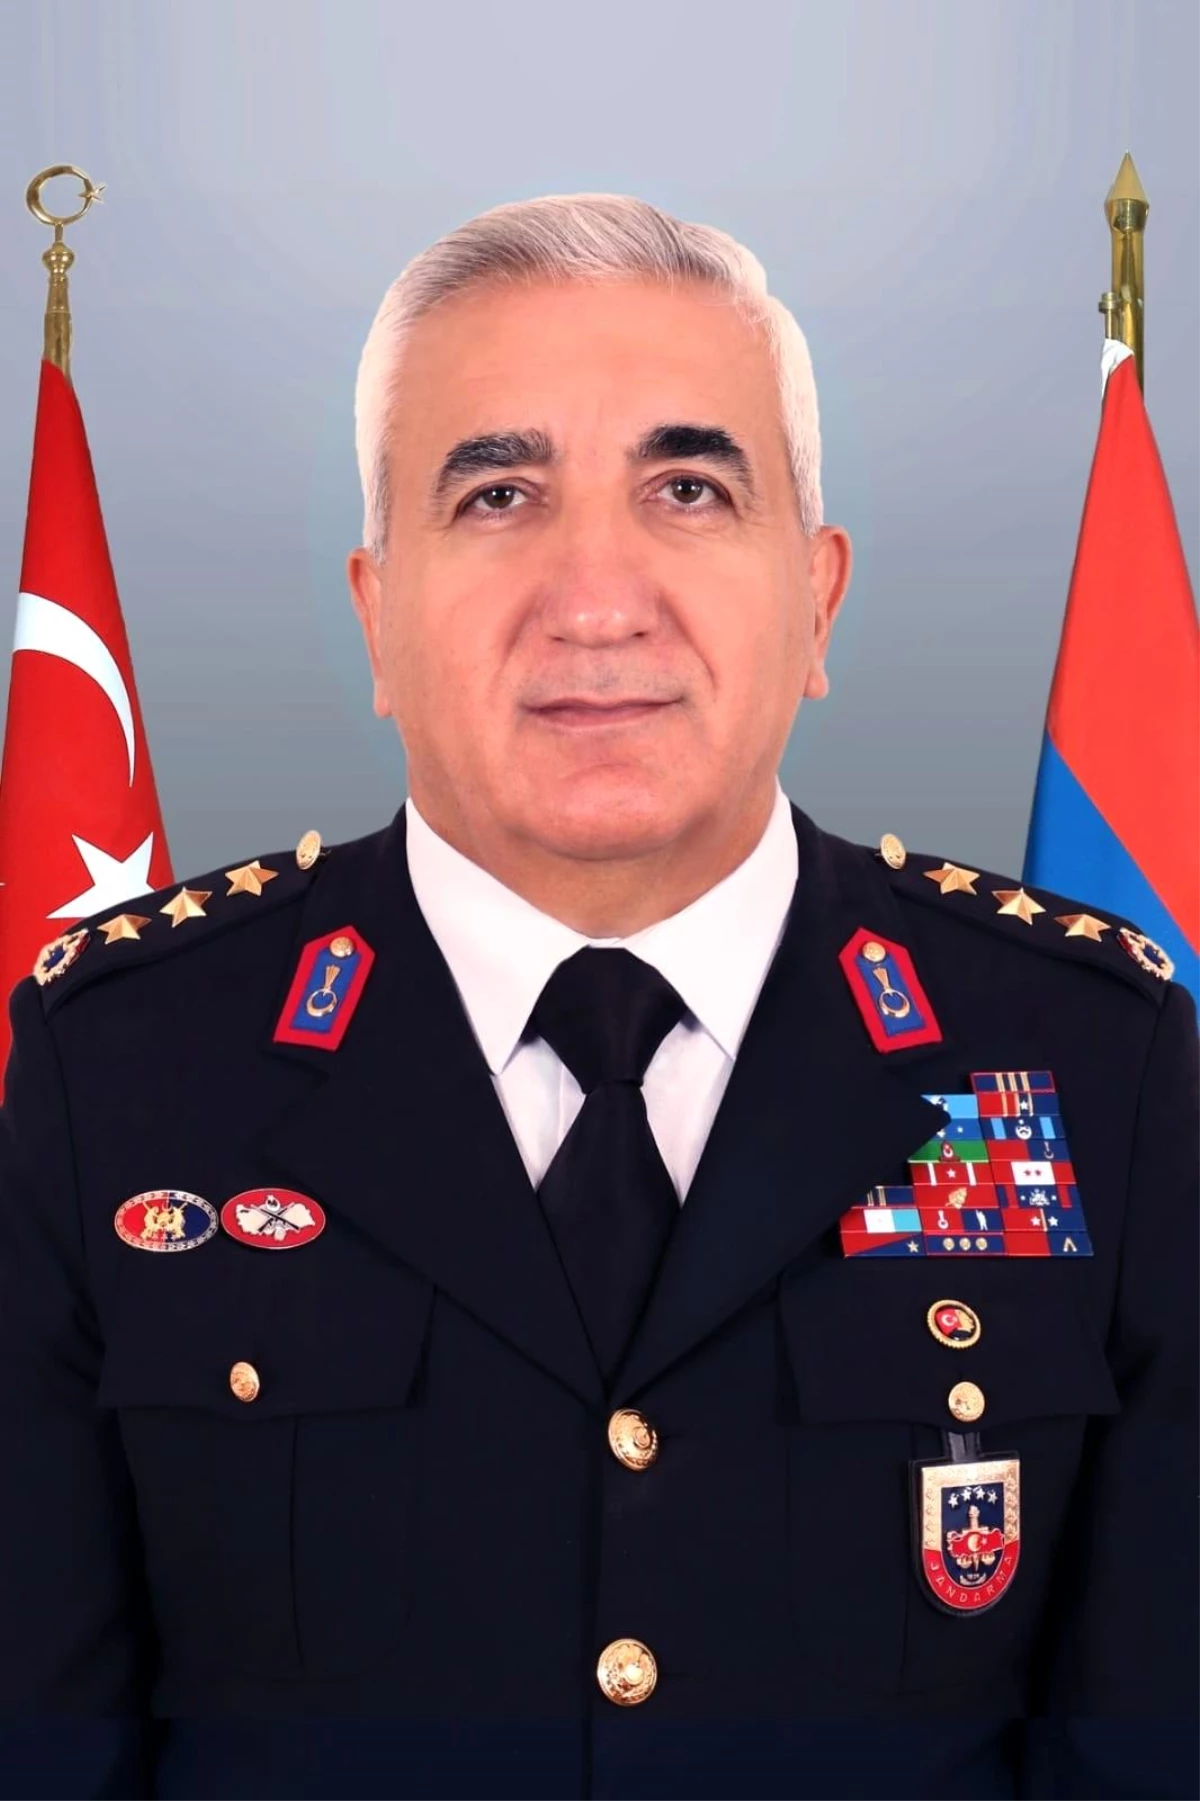 Trabzon İl Jandarma Komutanı Kıdemli Albay Orhan Sırma, Lefkoşa Büyükelçiliği İçişleri Müşavirliğine atandı